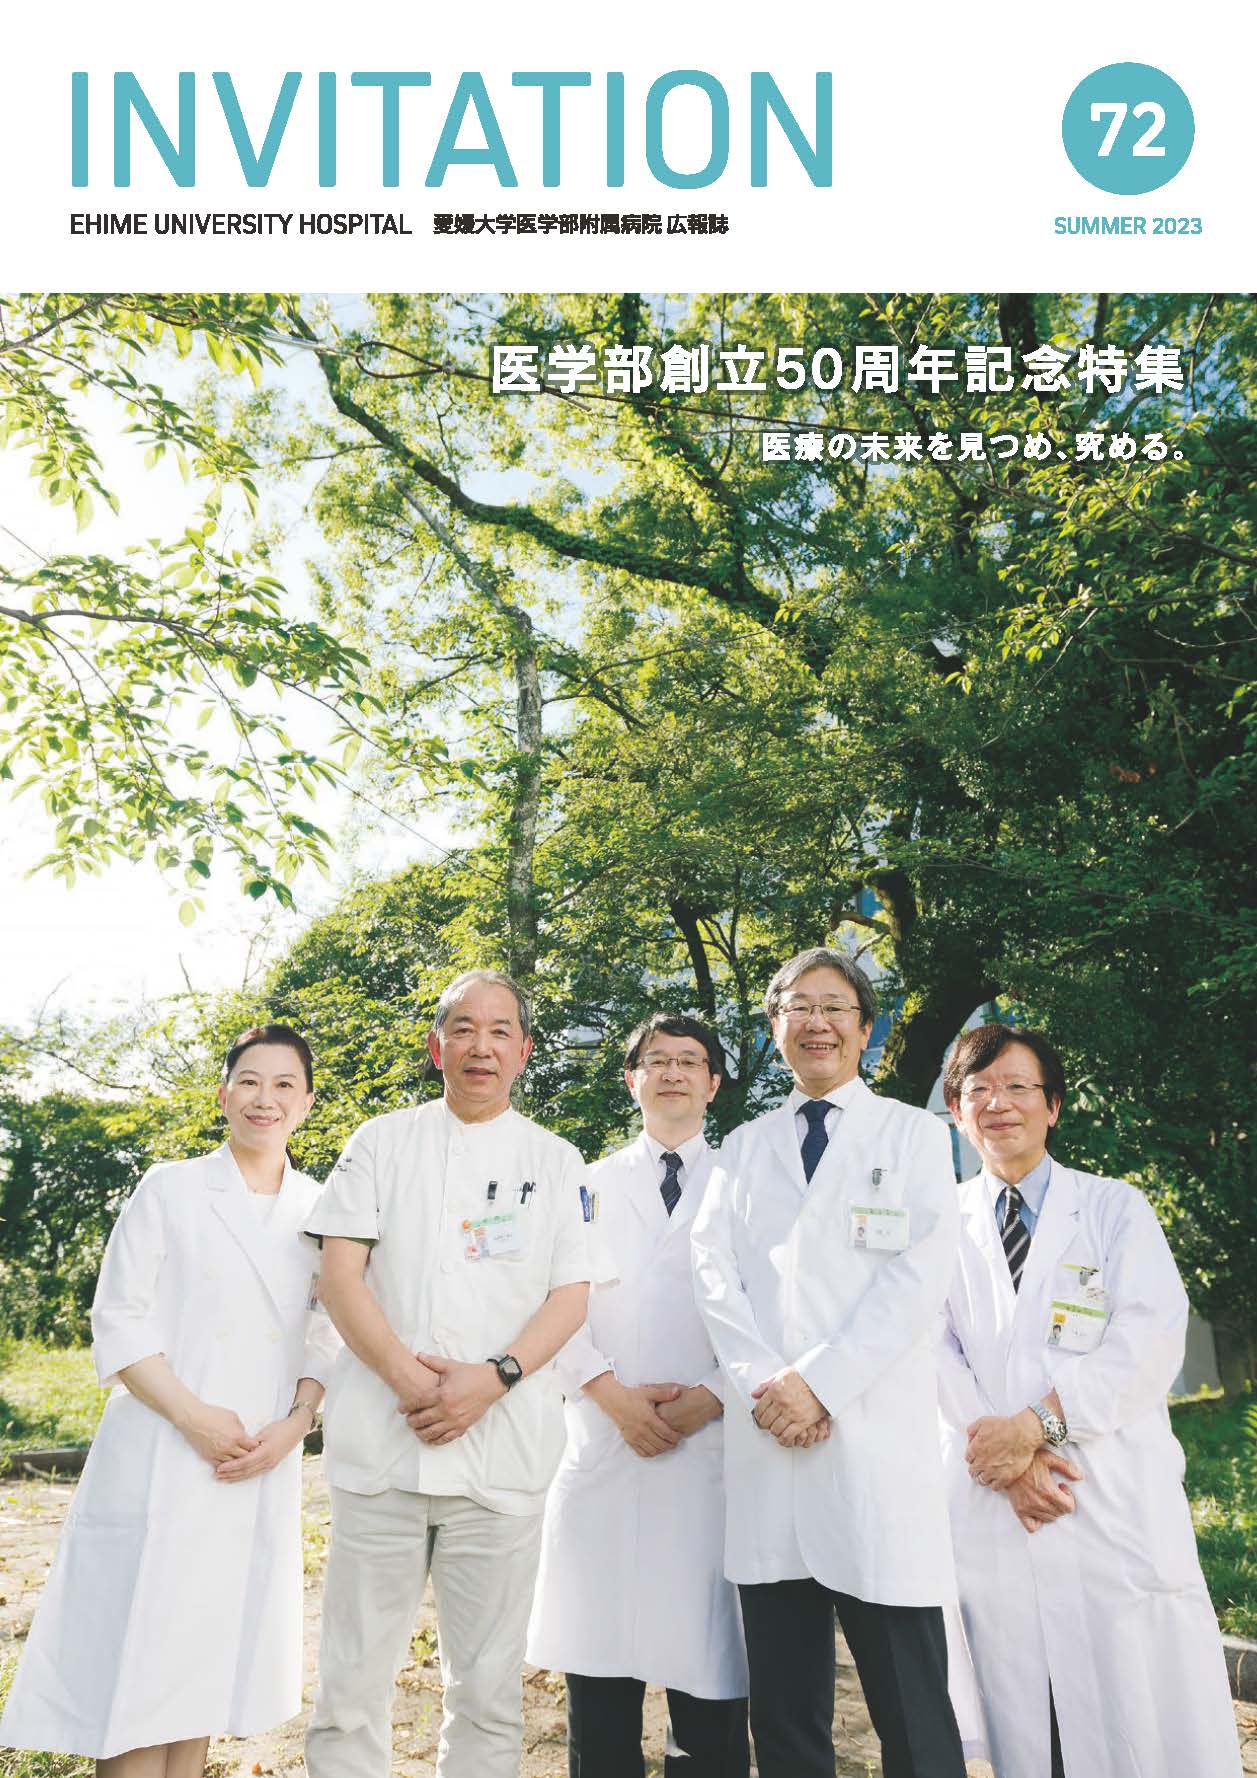 附属病院広報誌INVITATION72号にて医学部創立50周年記念事業を特集しました。